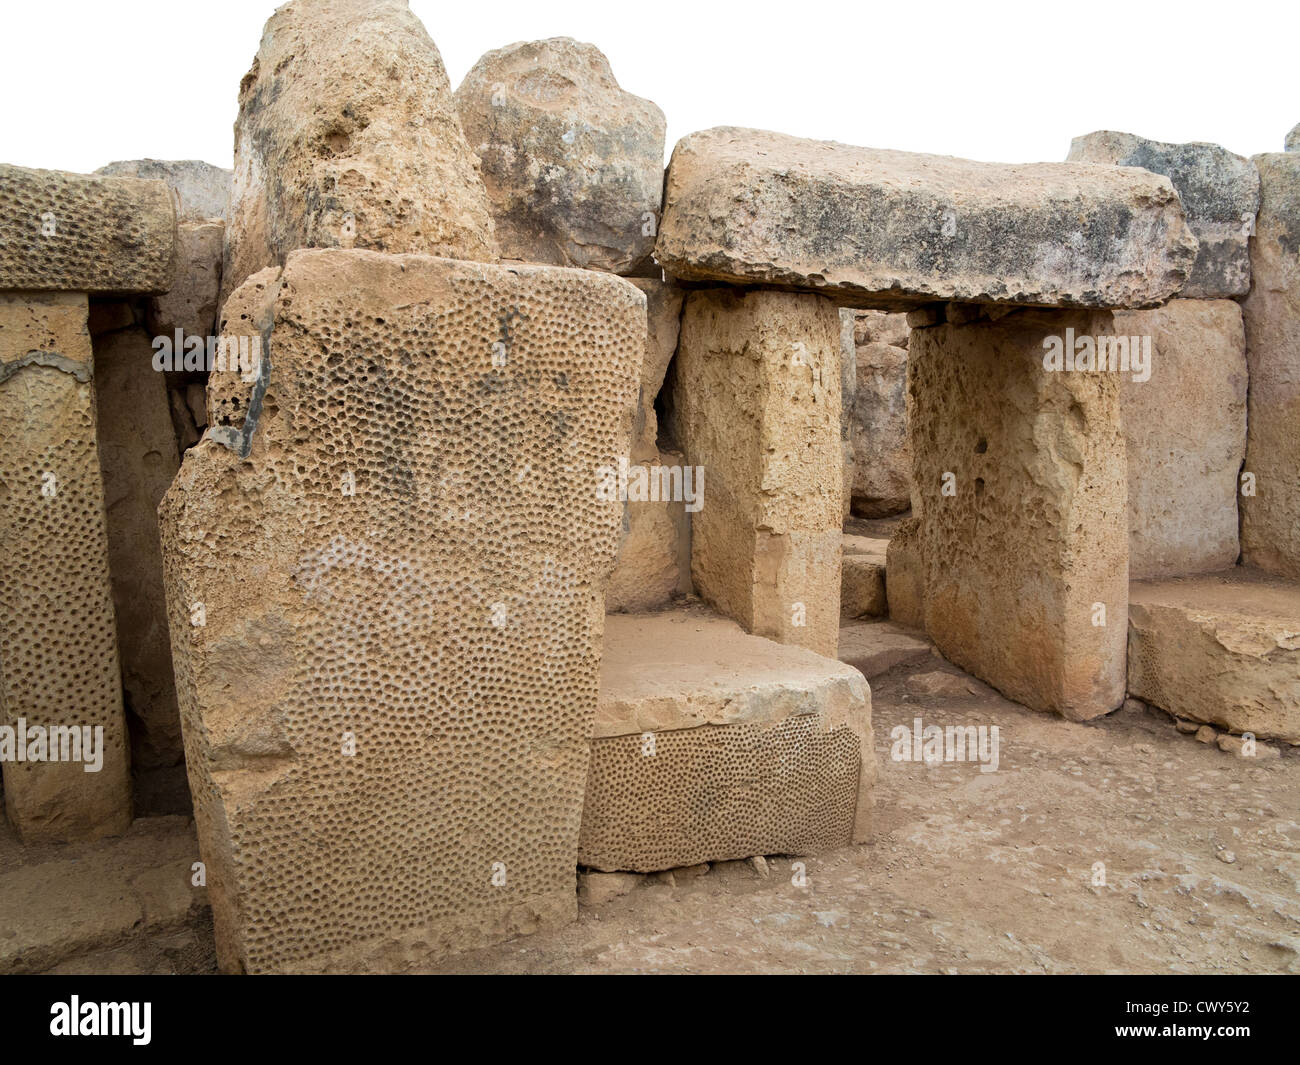 Porta mostra decorate snocciolate muratura in pietra a Mnajdra templi vicino a Hagar Qim, Qrendi, isola di Malta Foto Stock